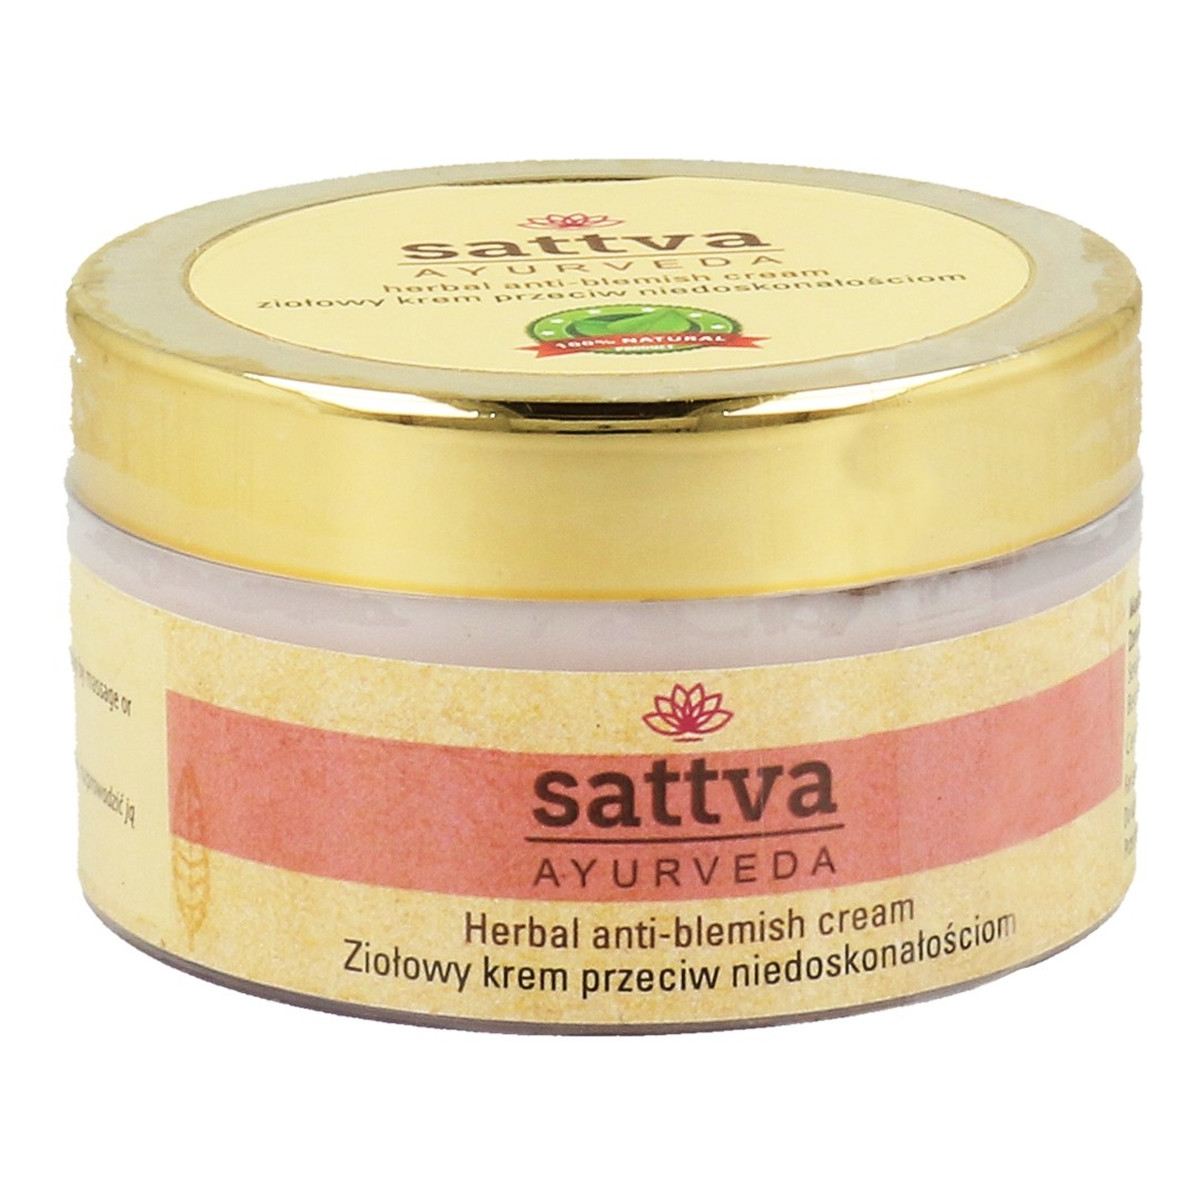 Sattva Herbal Anti-Blemish Cream Ziołowy Krem Przeciw Niedoskonałościom 50g